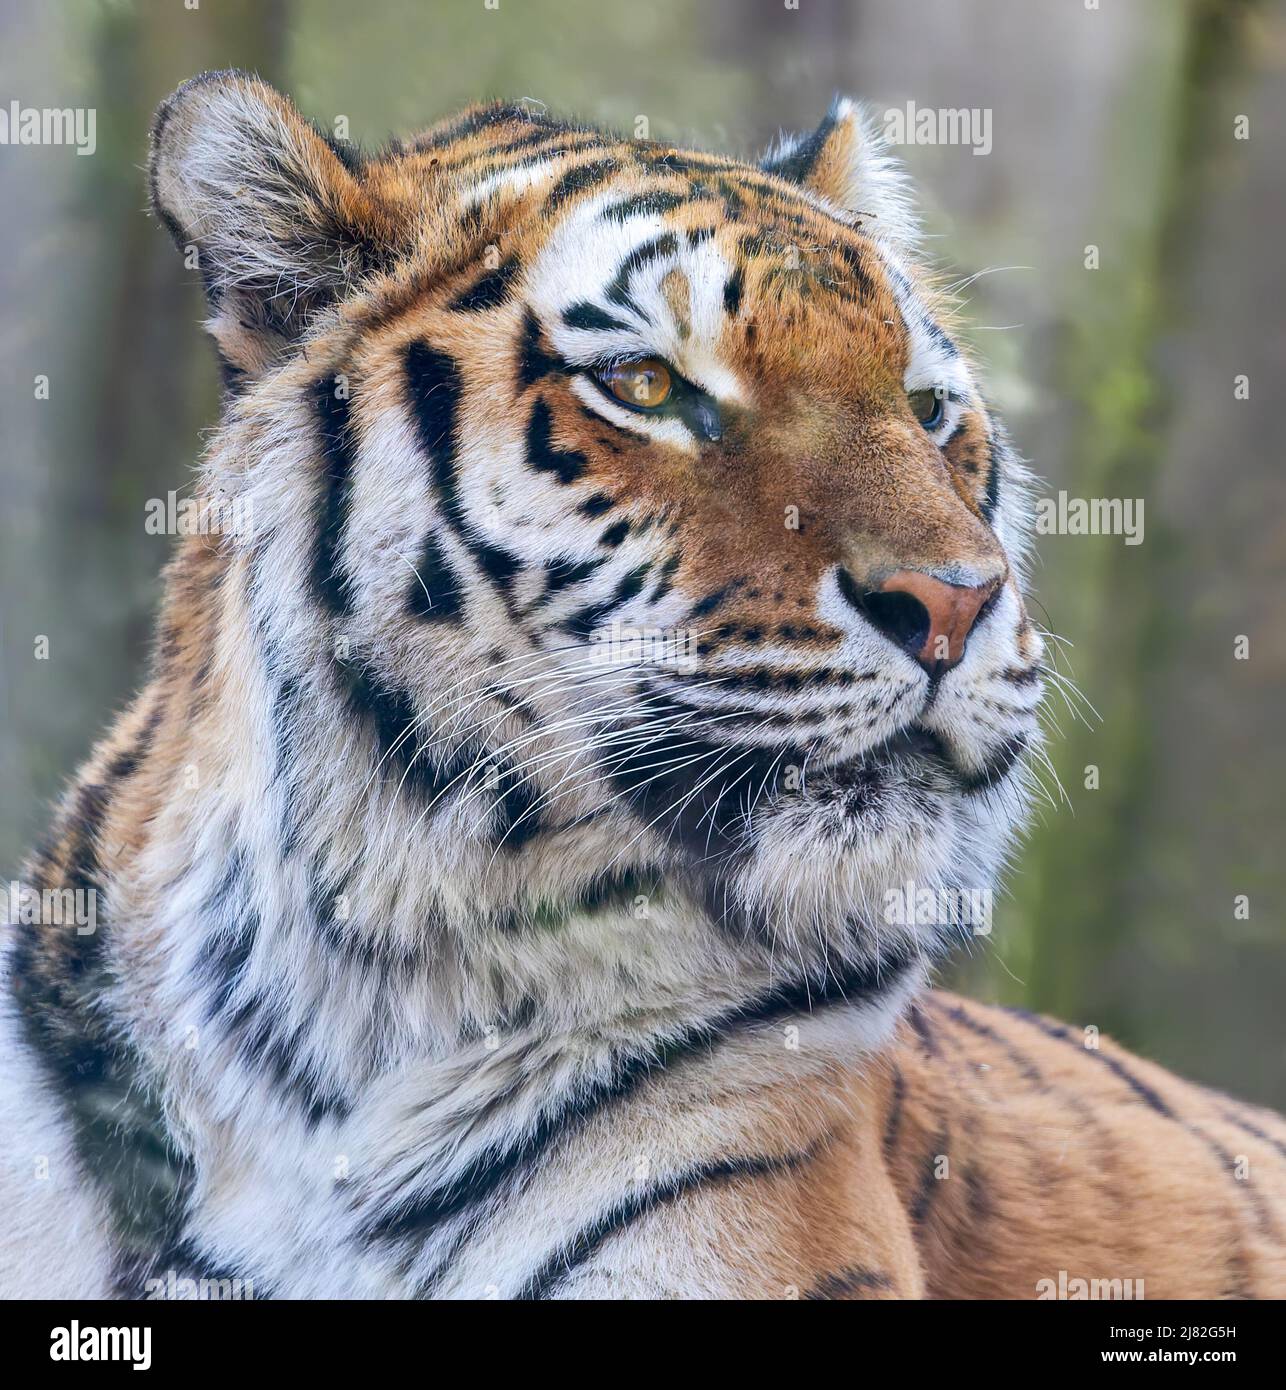 Close up view of a Siberian tiger (Panthera tigris altaica) Stock Photo